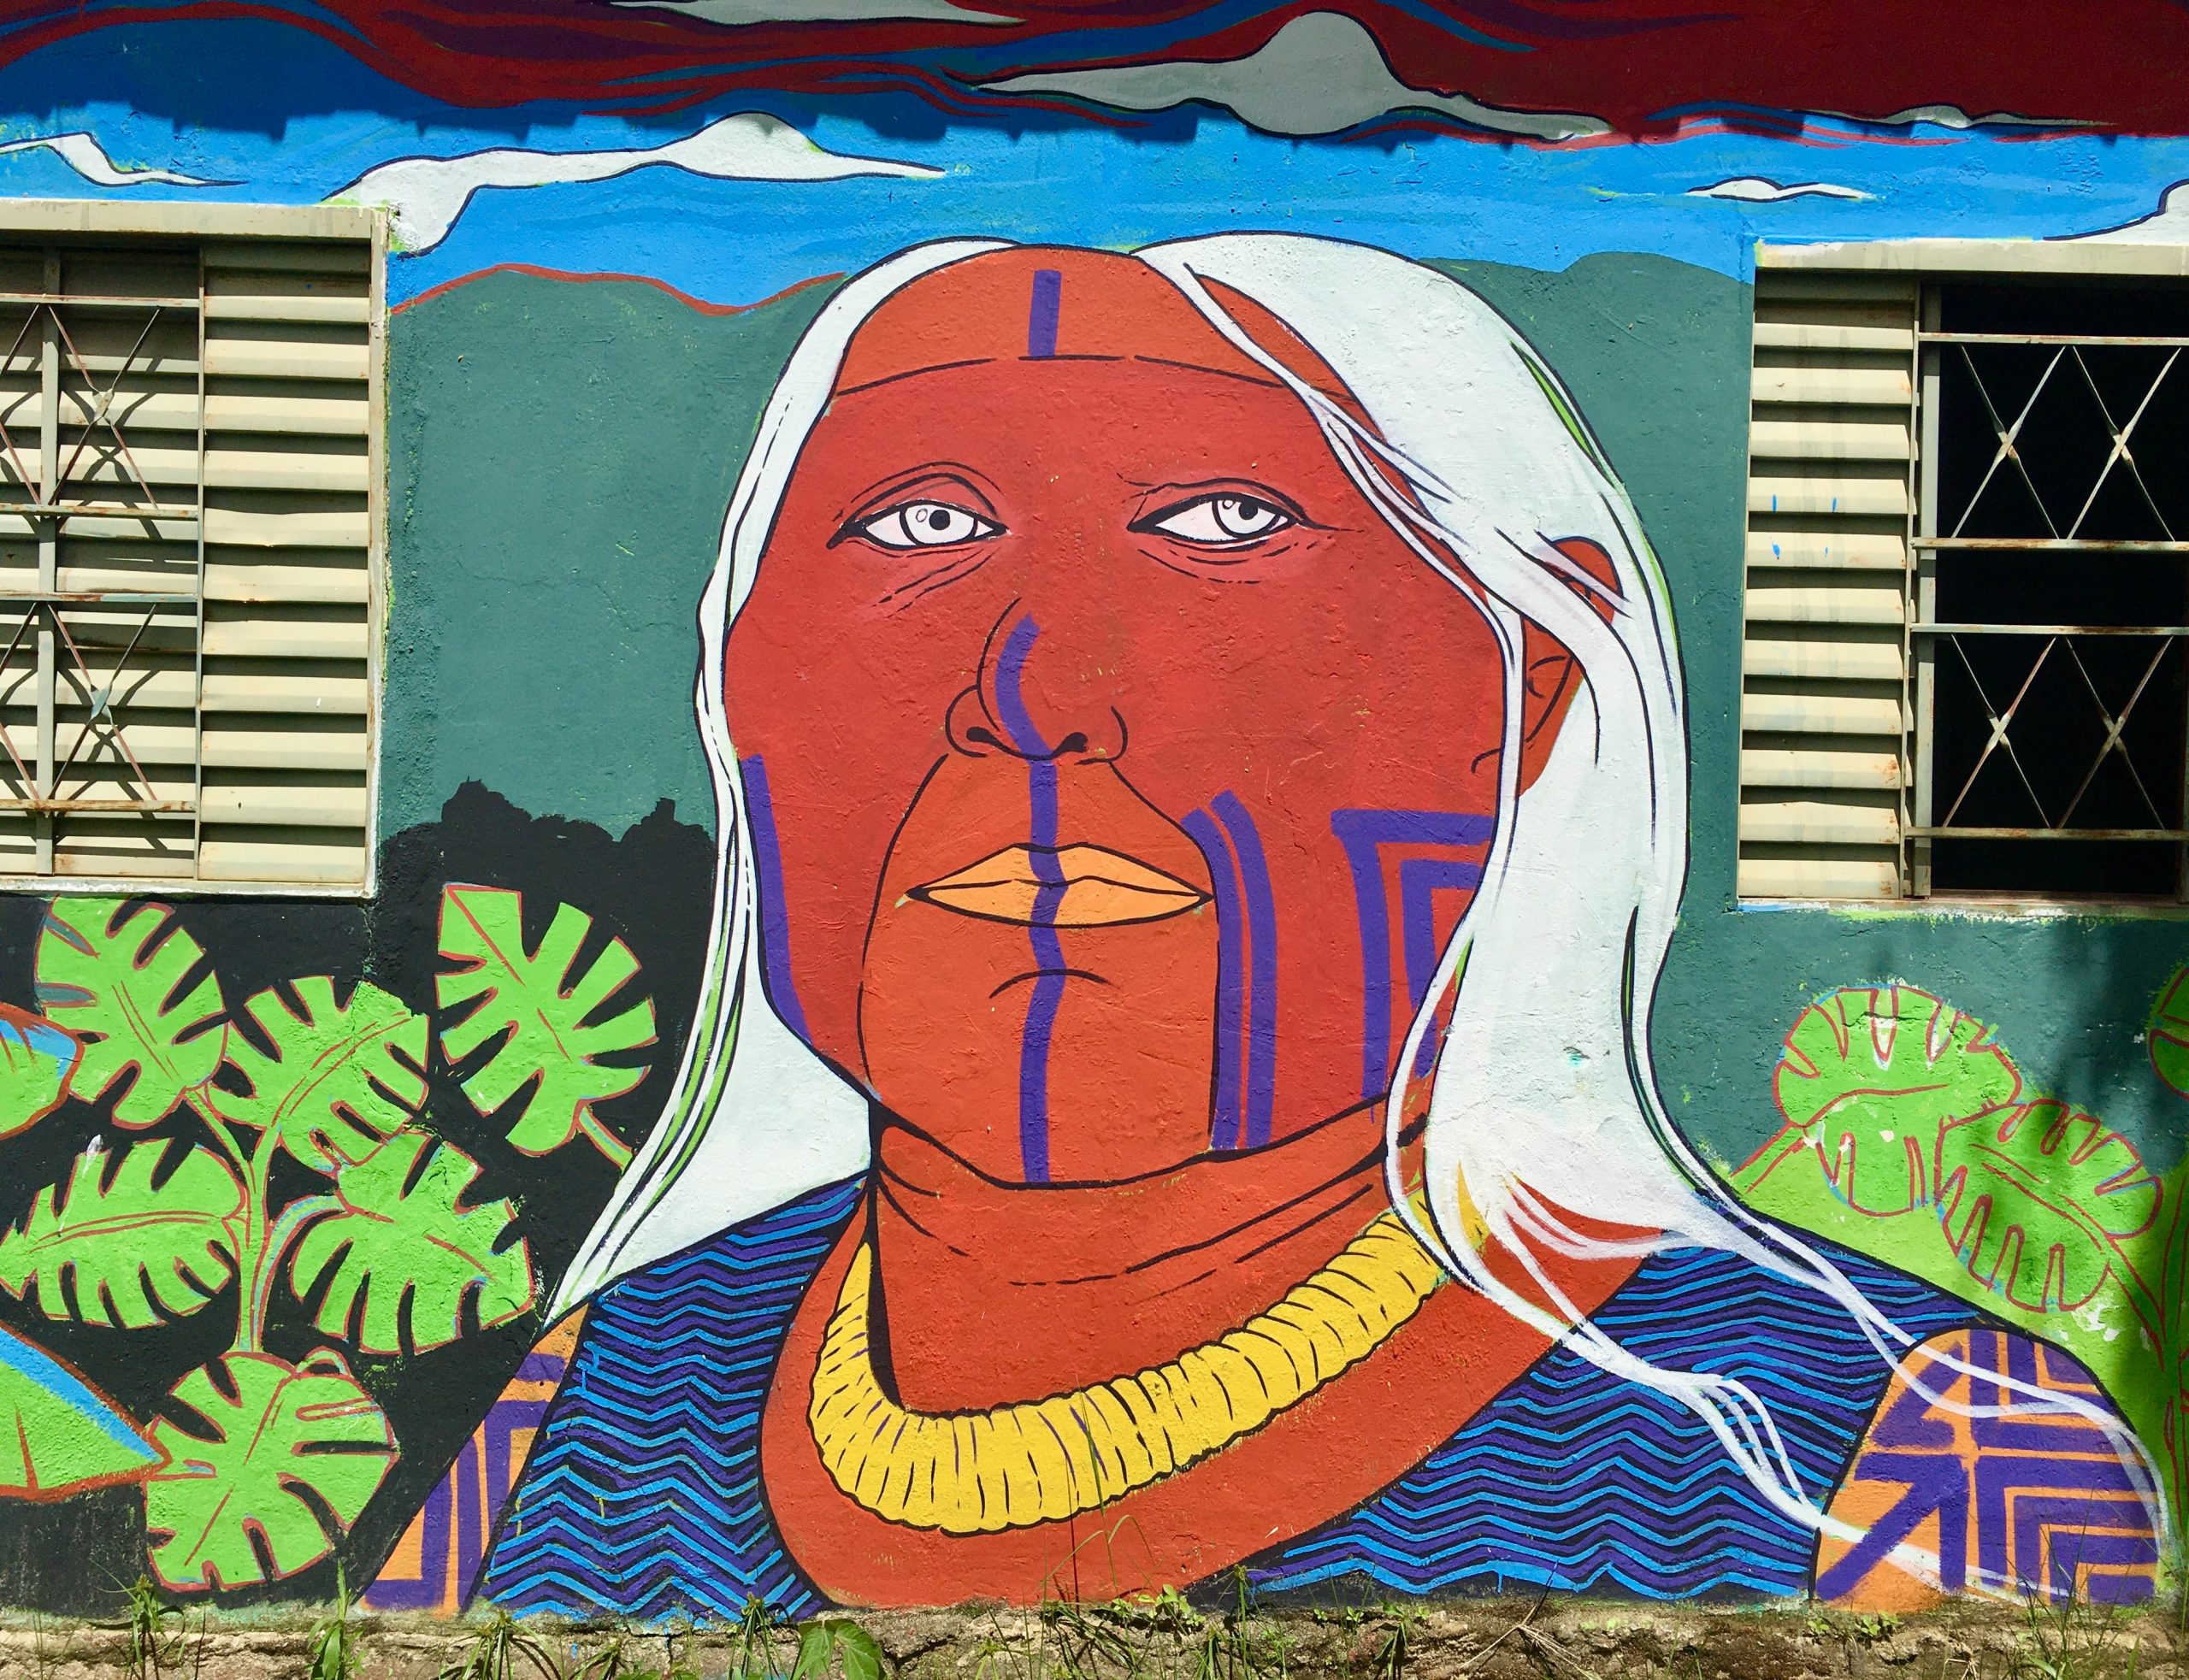 Fotografia da parede de uma casa com um grafiti de uma mulher indígena, de rosto vermelho e cabelos brancos